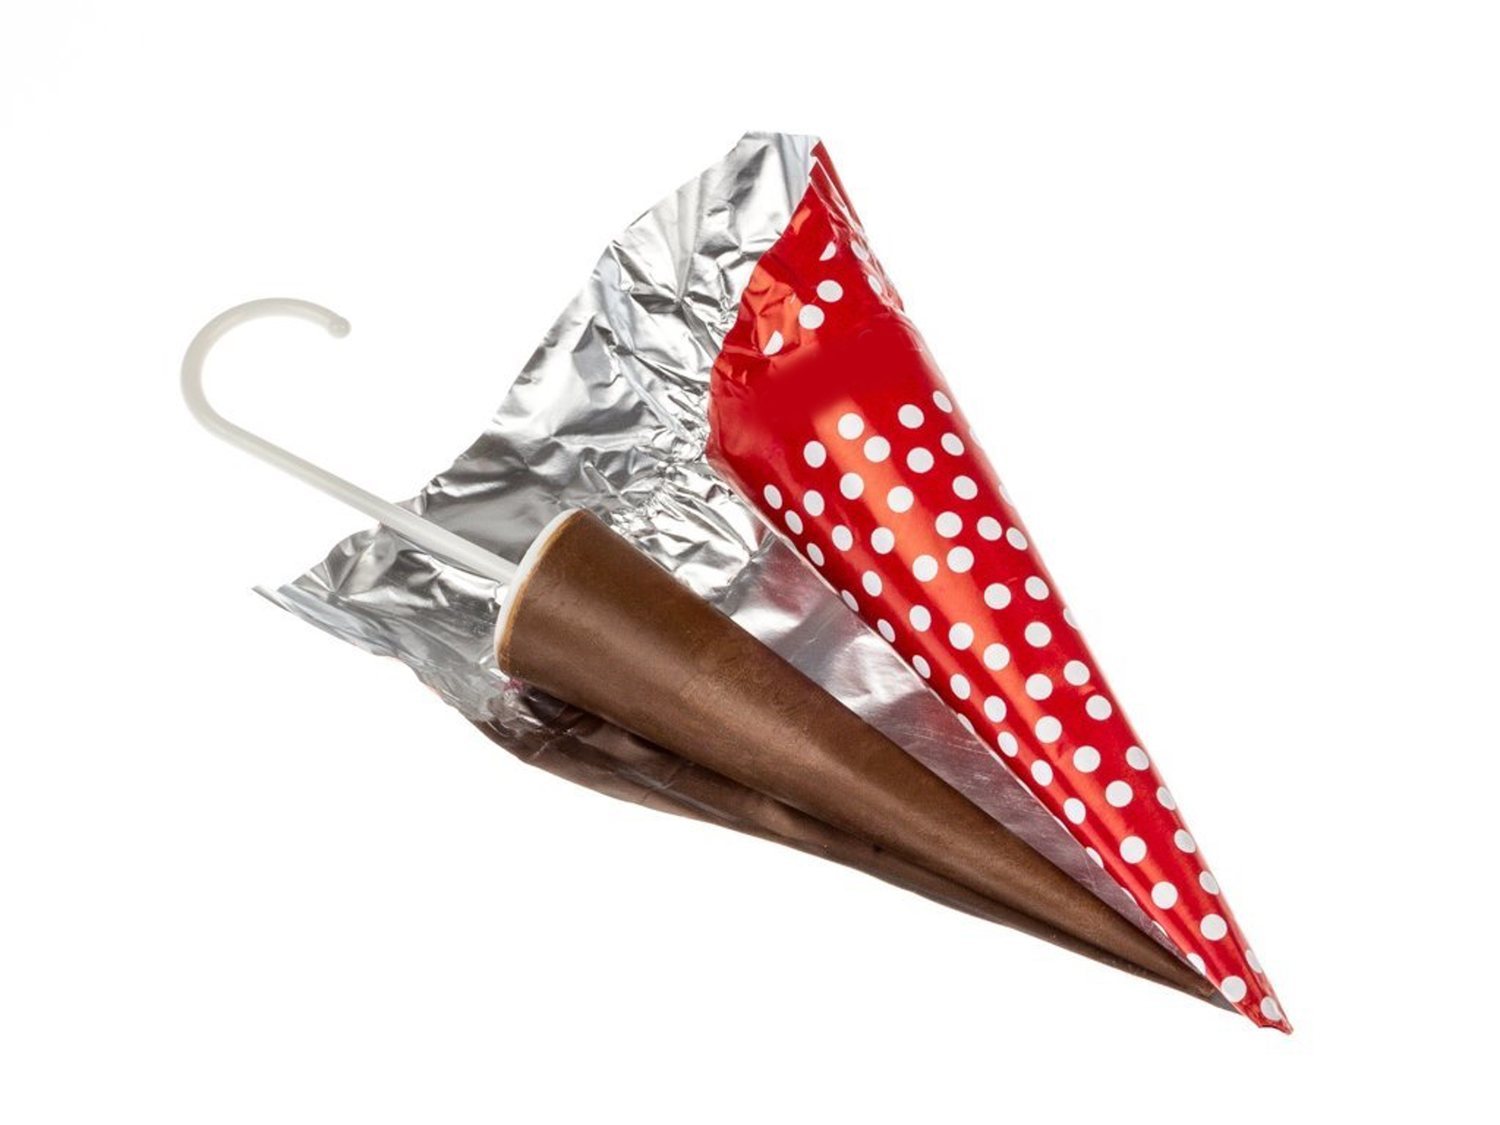 Alerta alimentaria: Sanidad pide no consumir estos tradicionales paraguas de chocolate